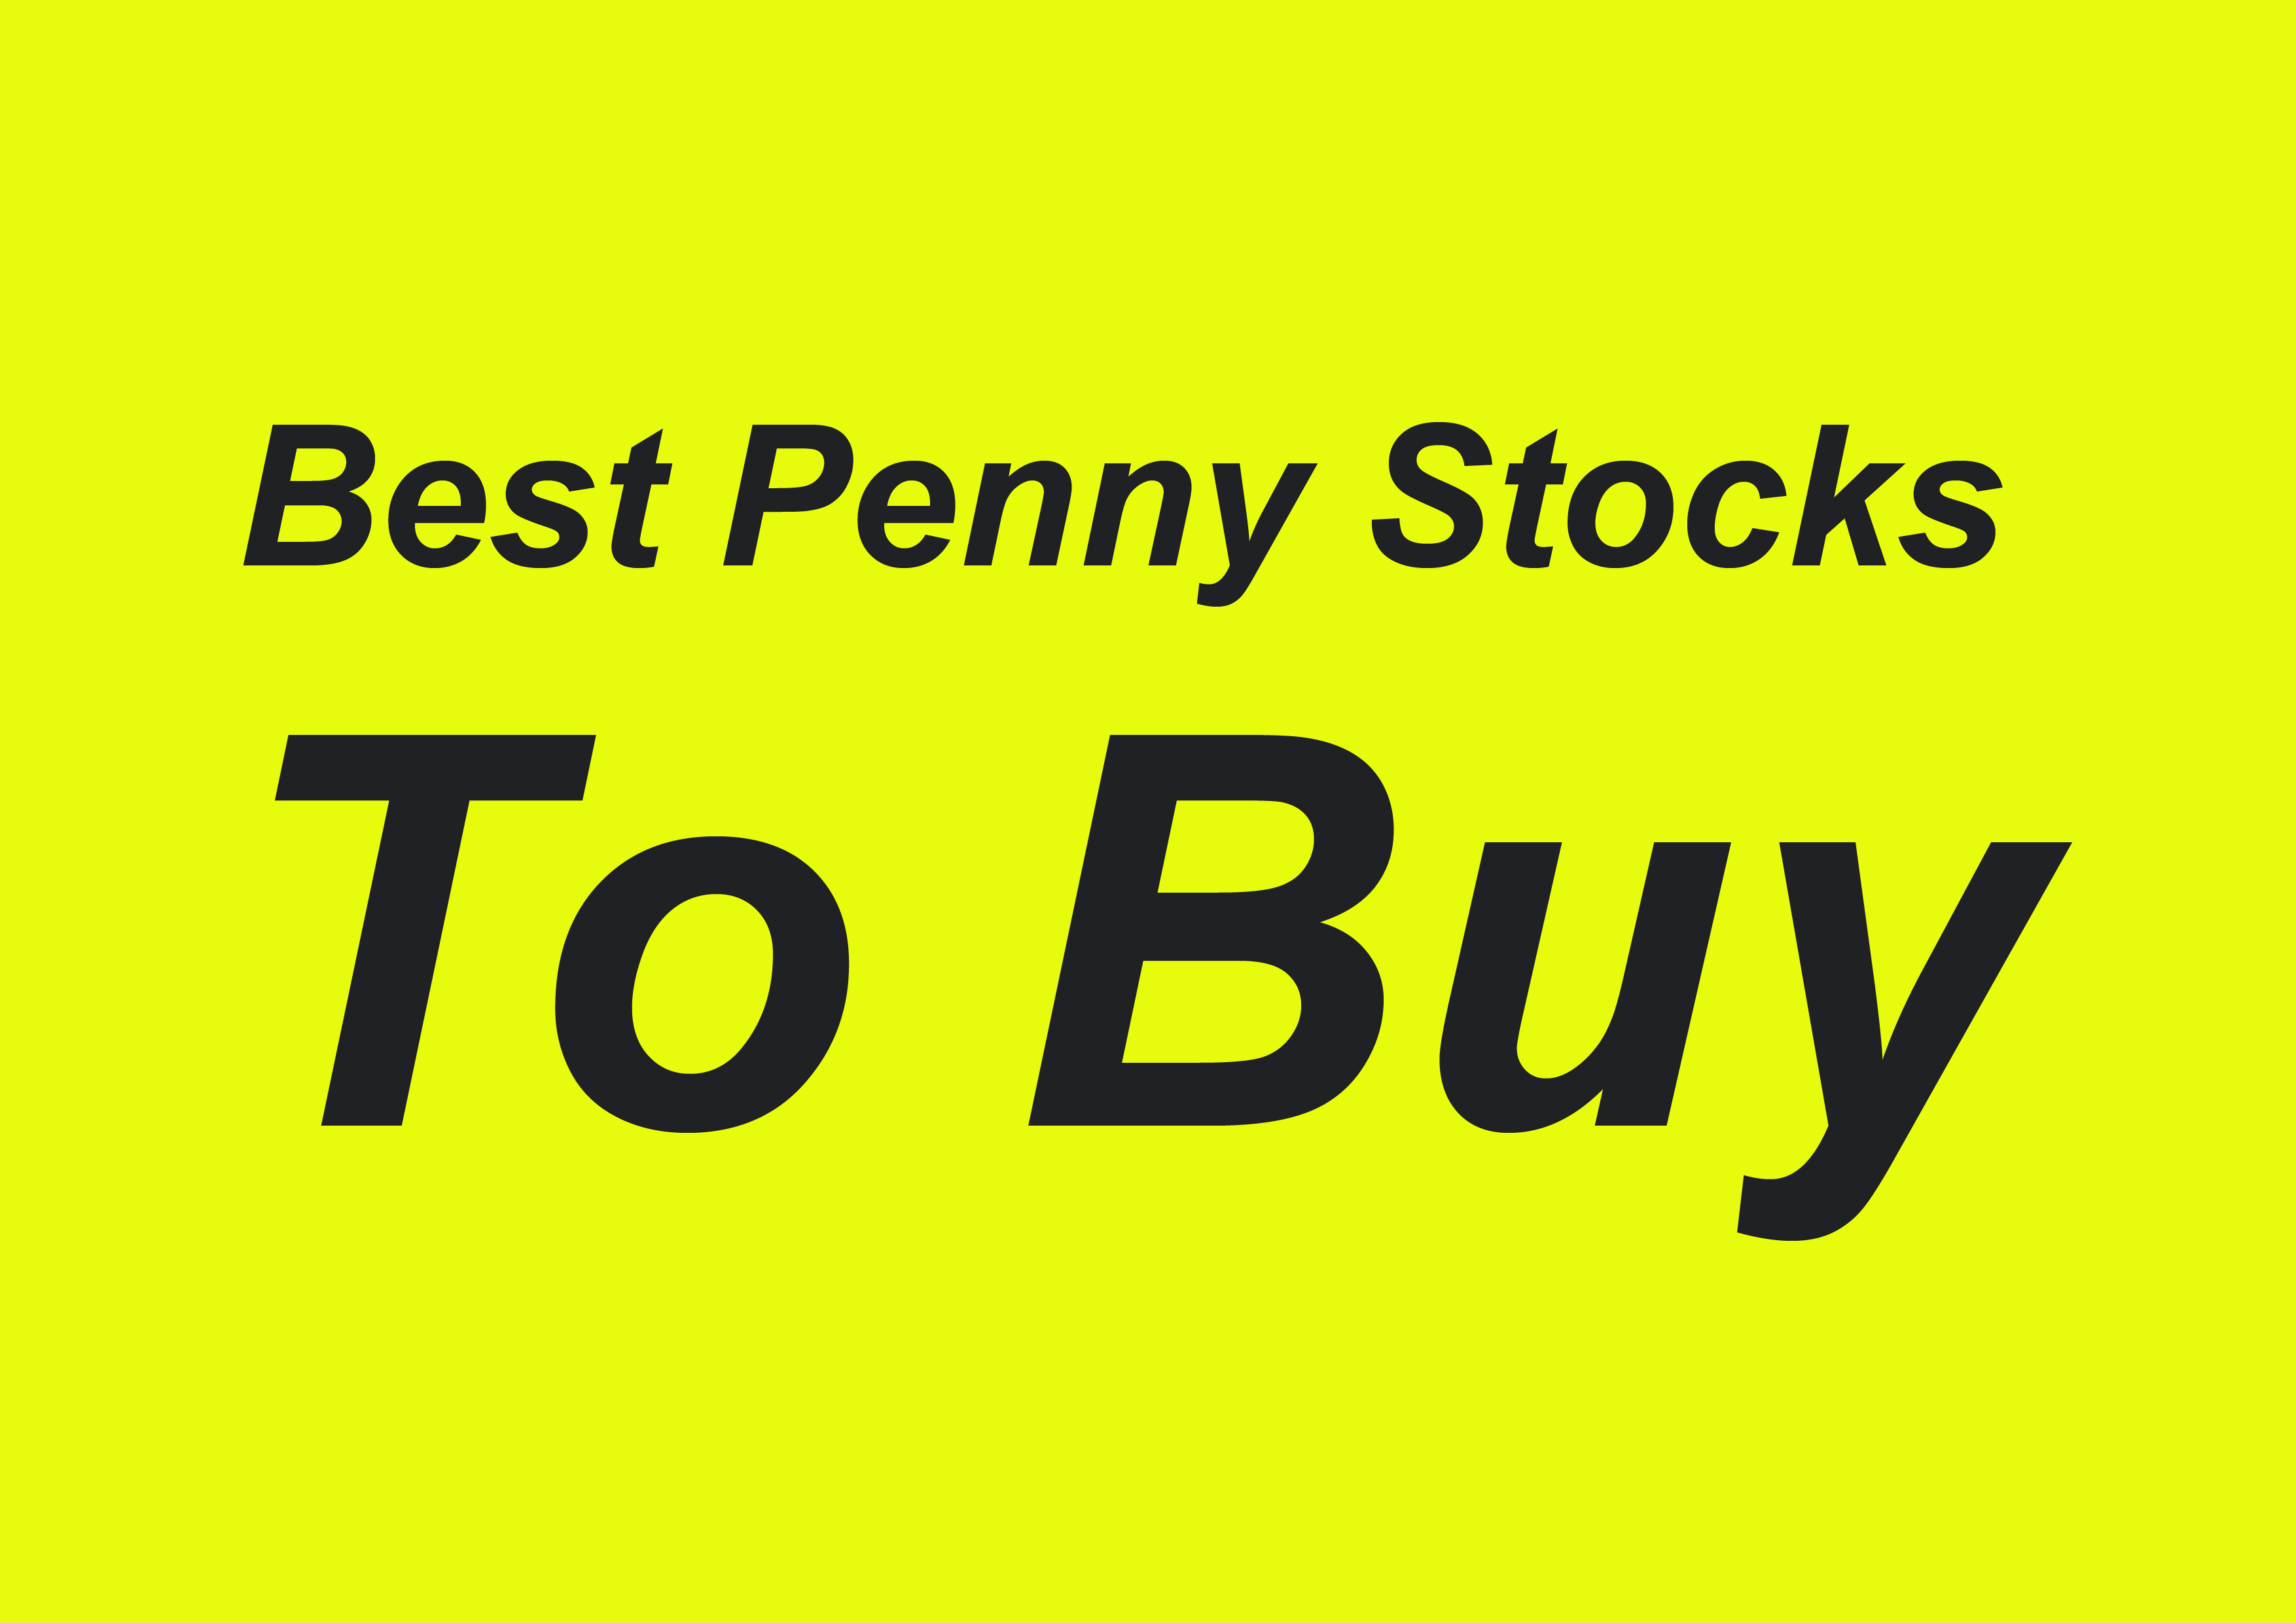 best-penny-stocks-to-buy-best-penny-stocks-to-buy-in-india